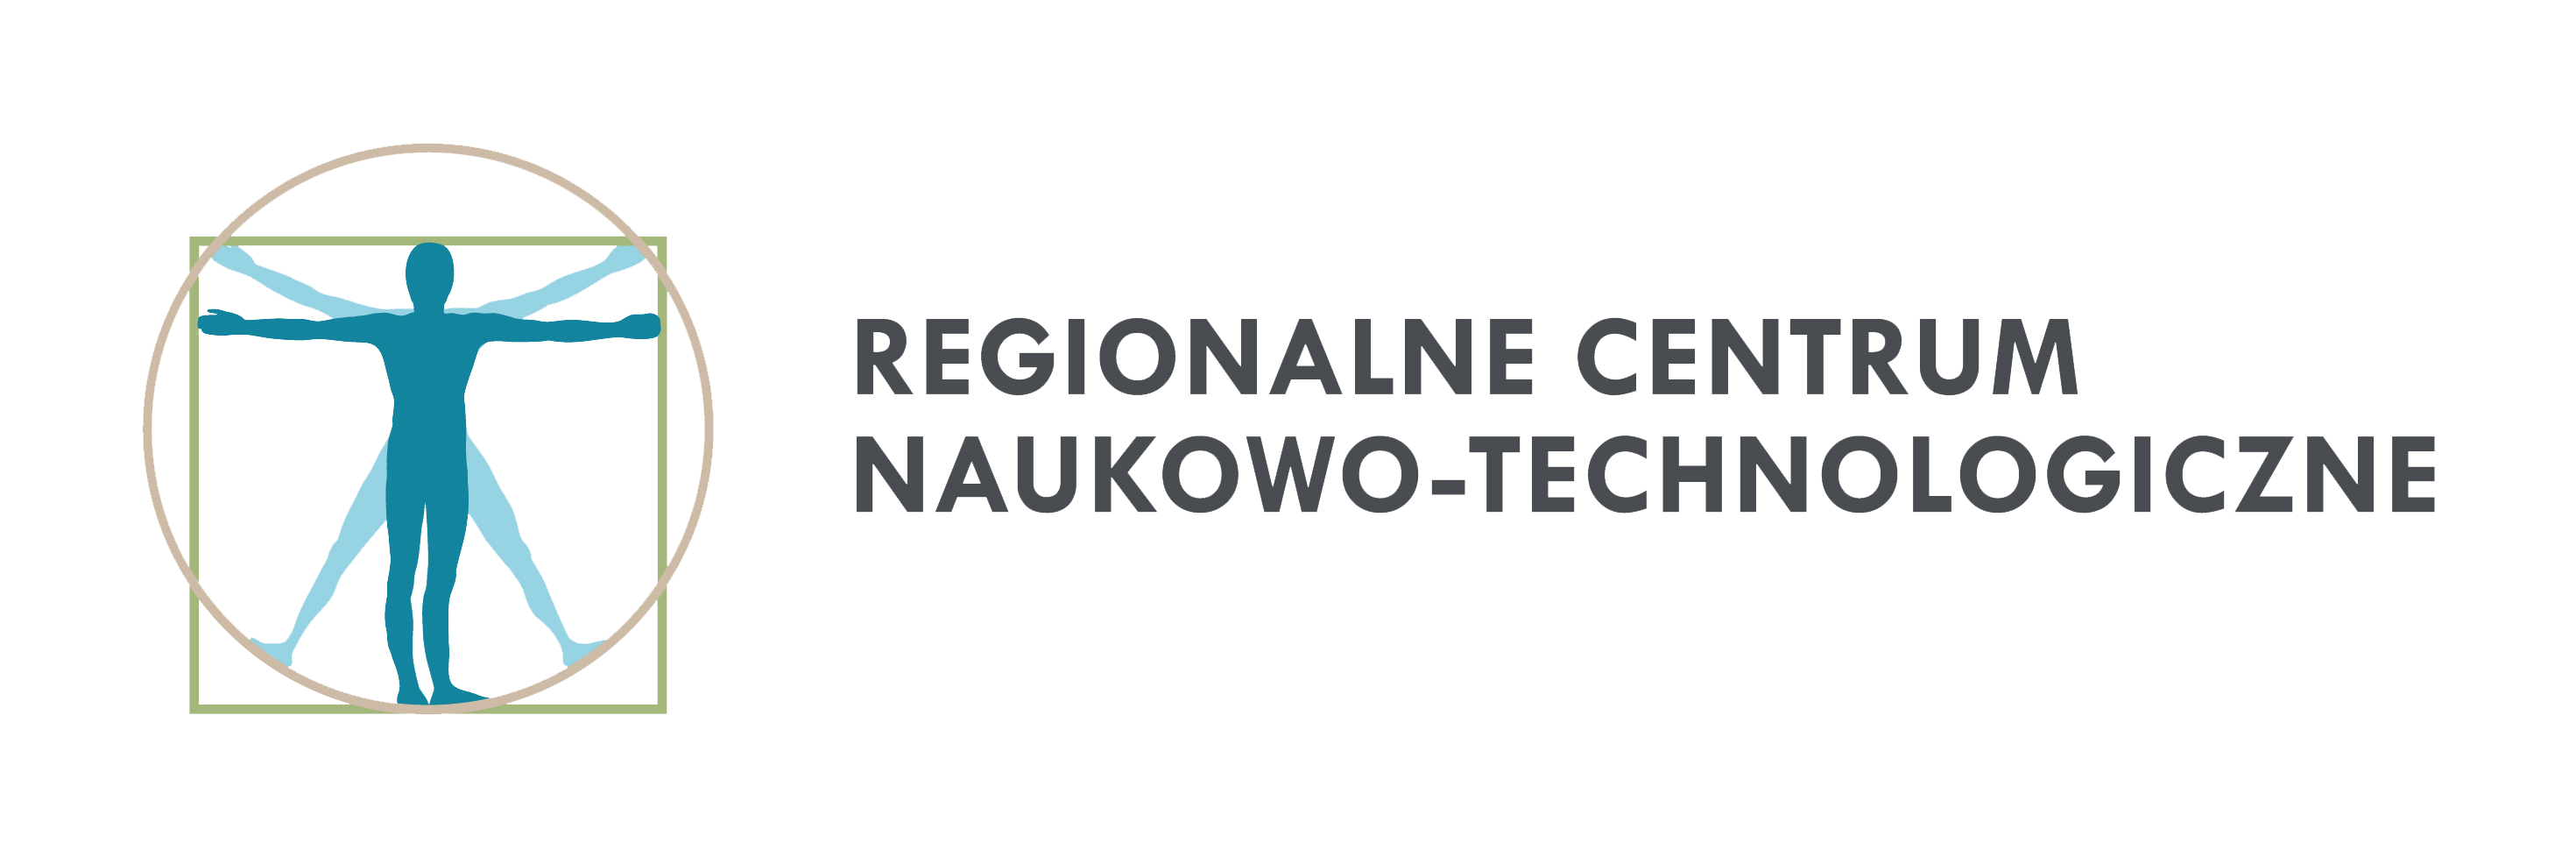 REGIONALNE CENTRUM NAUKOWO-TECHNOLOGICZNE Z LOTU PTAKA